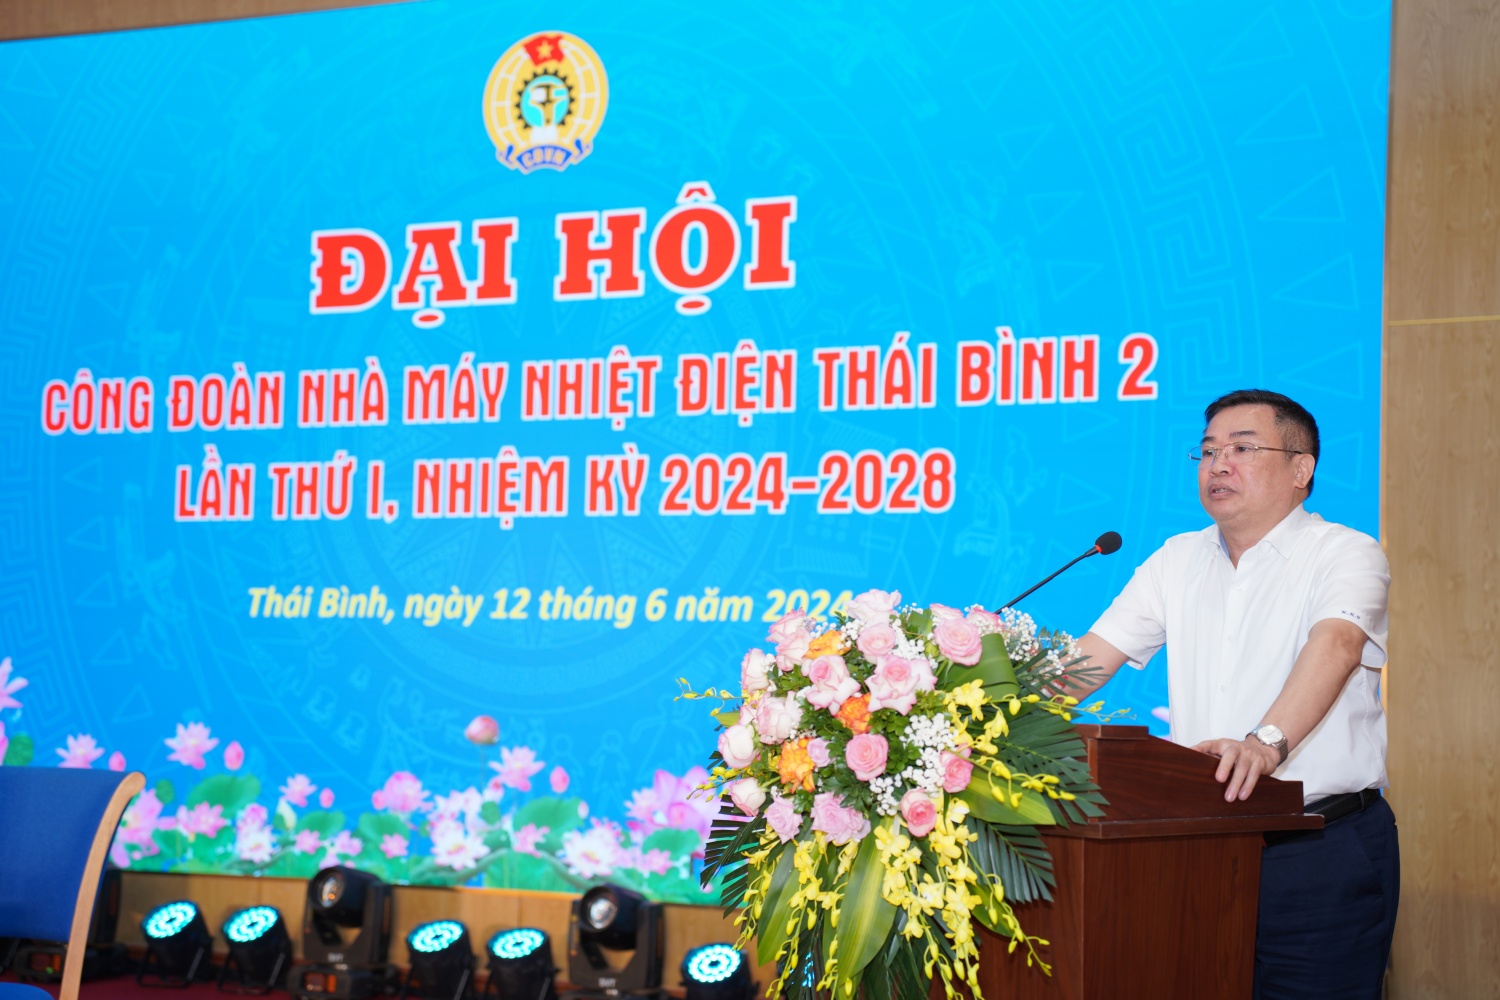 Công đoàn Nhà máy Nhiệt điện Thái bình 2 tổ chức thành công Đại hội lần thứ nhất, nhiệm kỳ 2024 - 2028